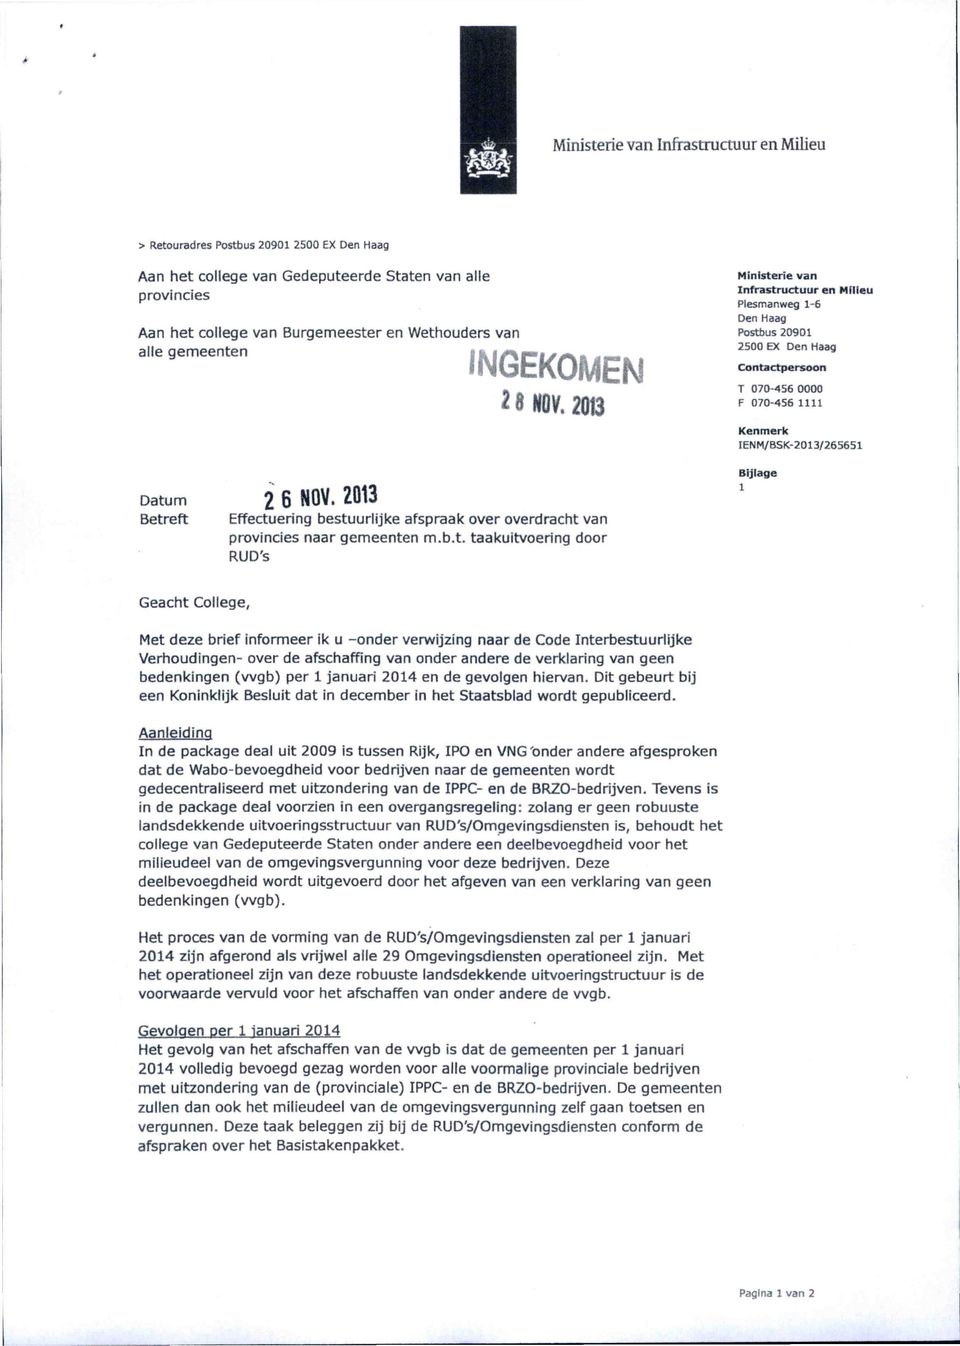 Infrastructuur en Milieu Plesmanweg 1-6 Den Haag Postbus 20901 2500 EX Den Haag Contactpersoon T 070-456 0000 F 070-456 1111 Kenmerk IENM/BSK-2013/265651 Bijlage 1 Geacht College, Met deze brief